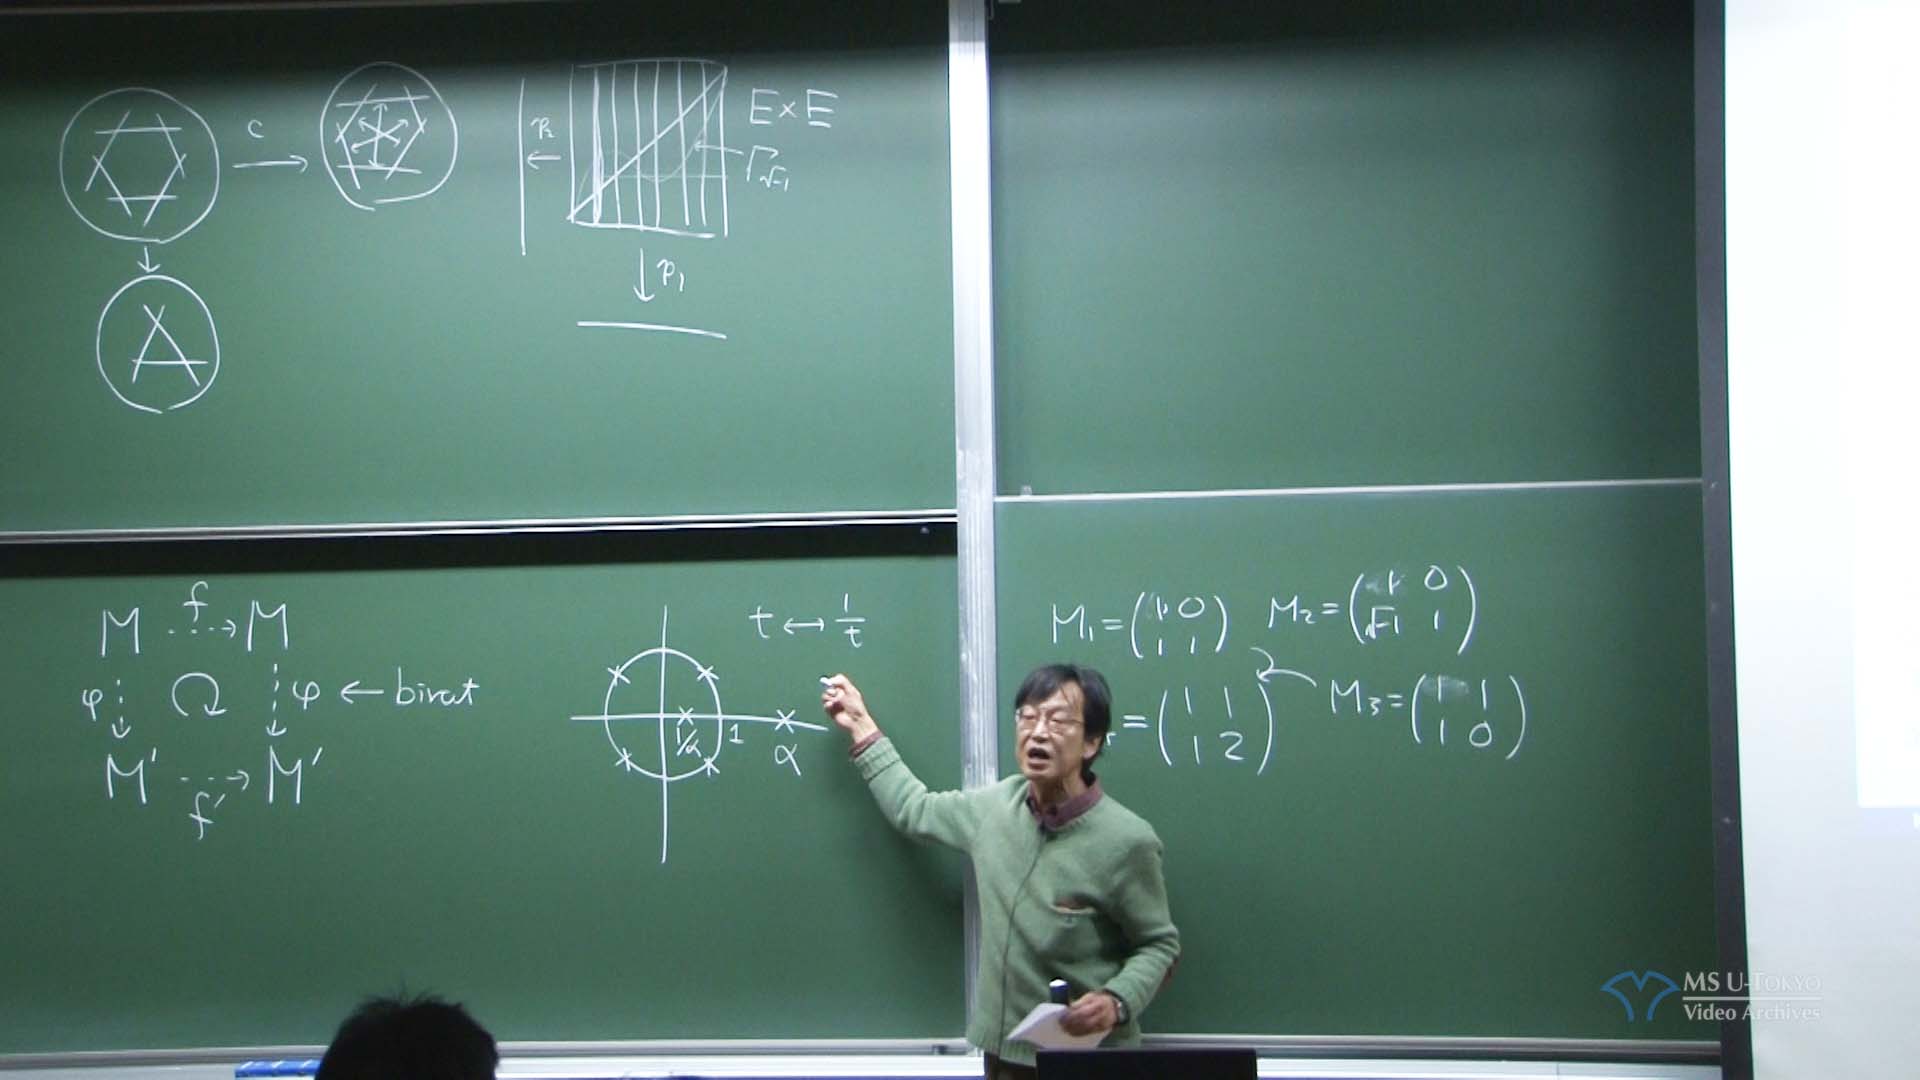 小木曽 啓示 氏(東京大学大学院数理科学研究科)